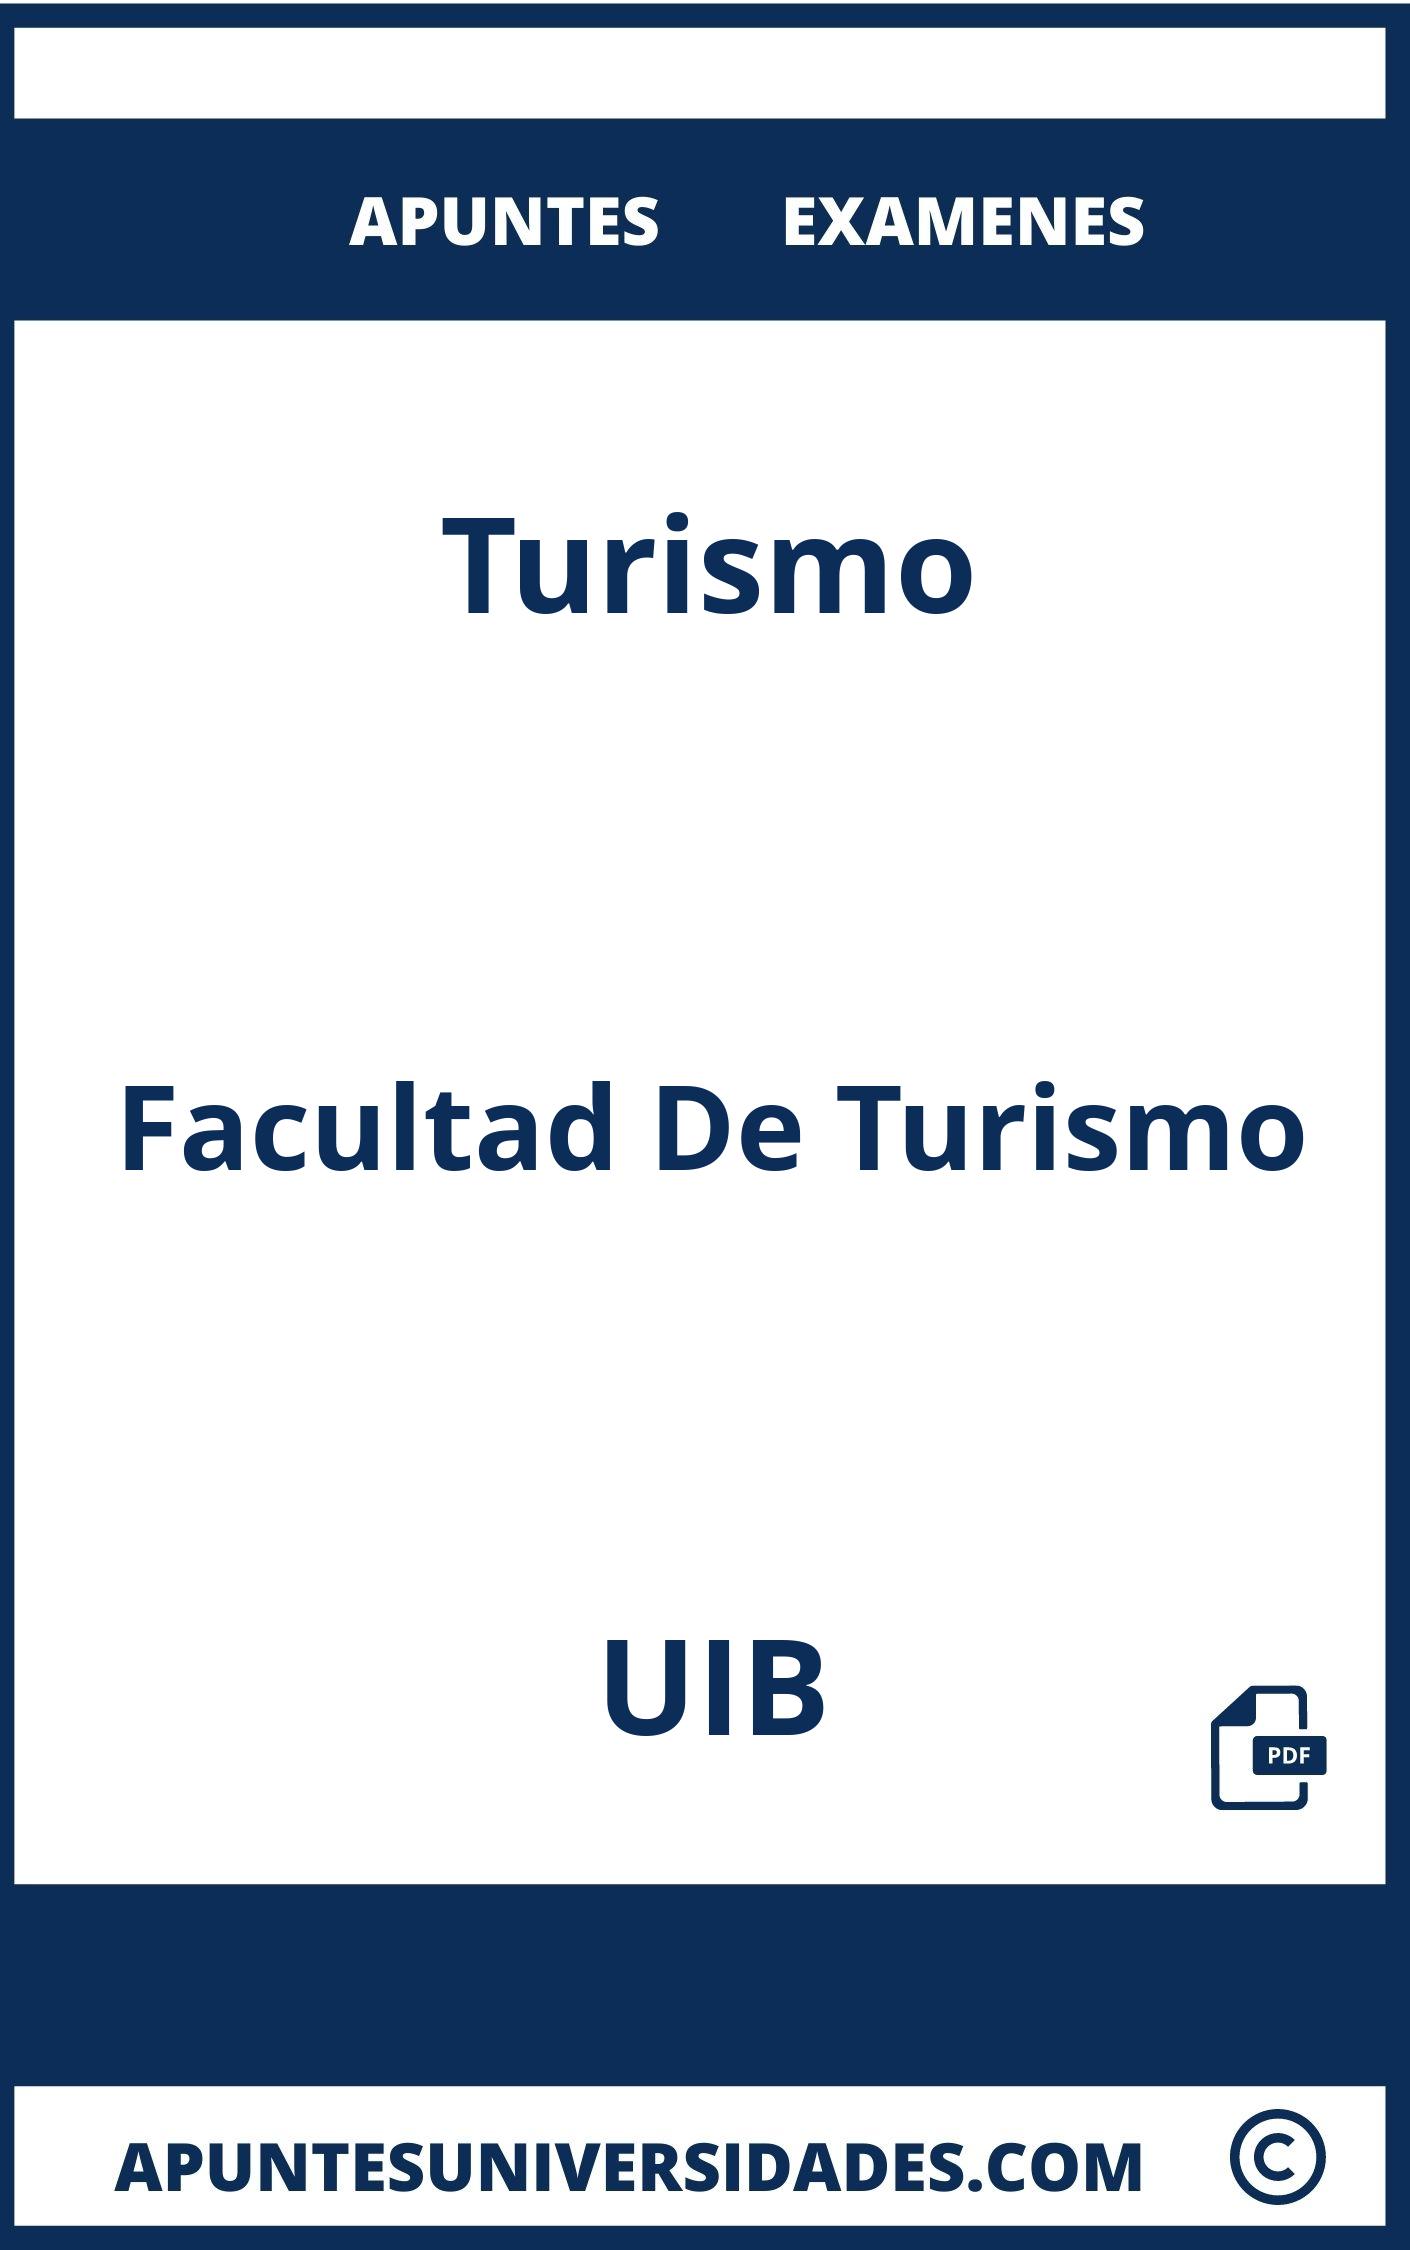 Apuntes Turismo UIB y Examenes